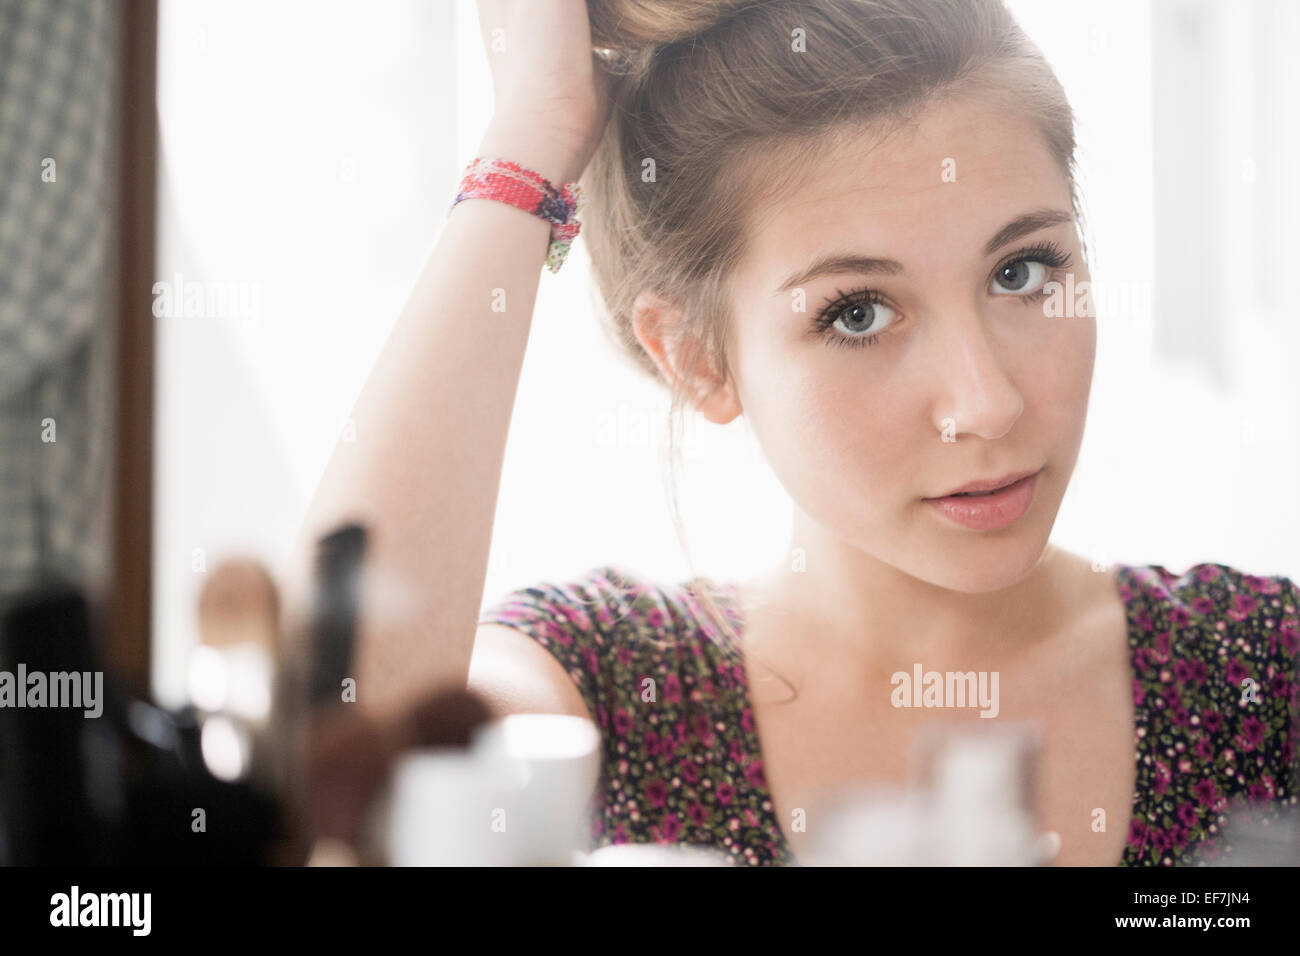 Adolescente mirando en el espejo Foto de stock